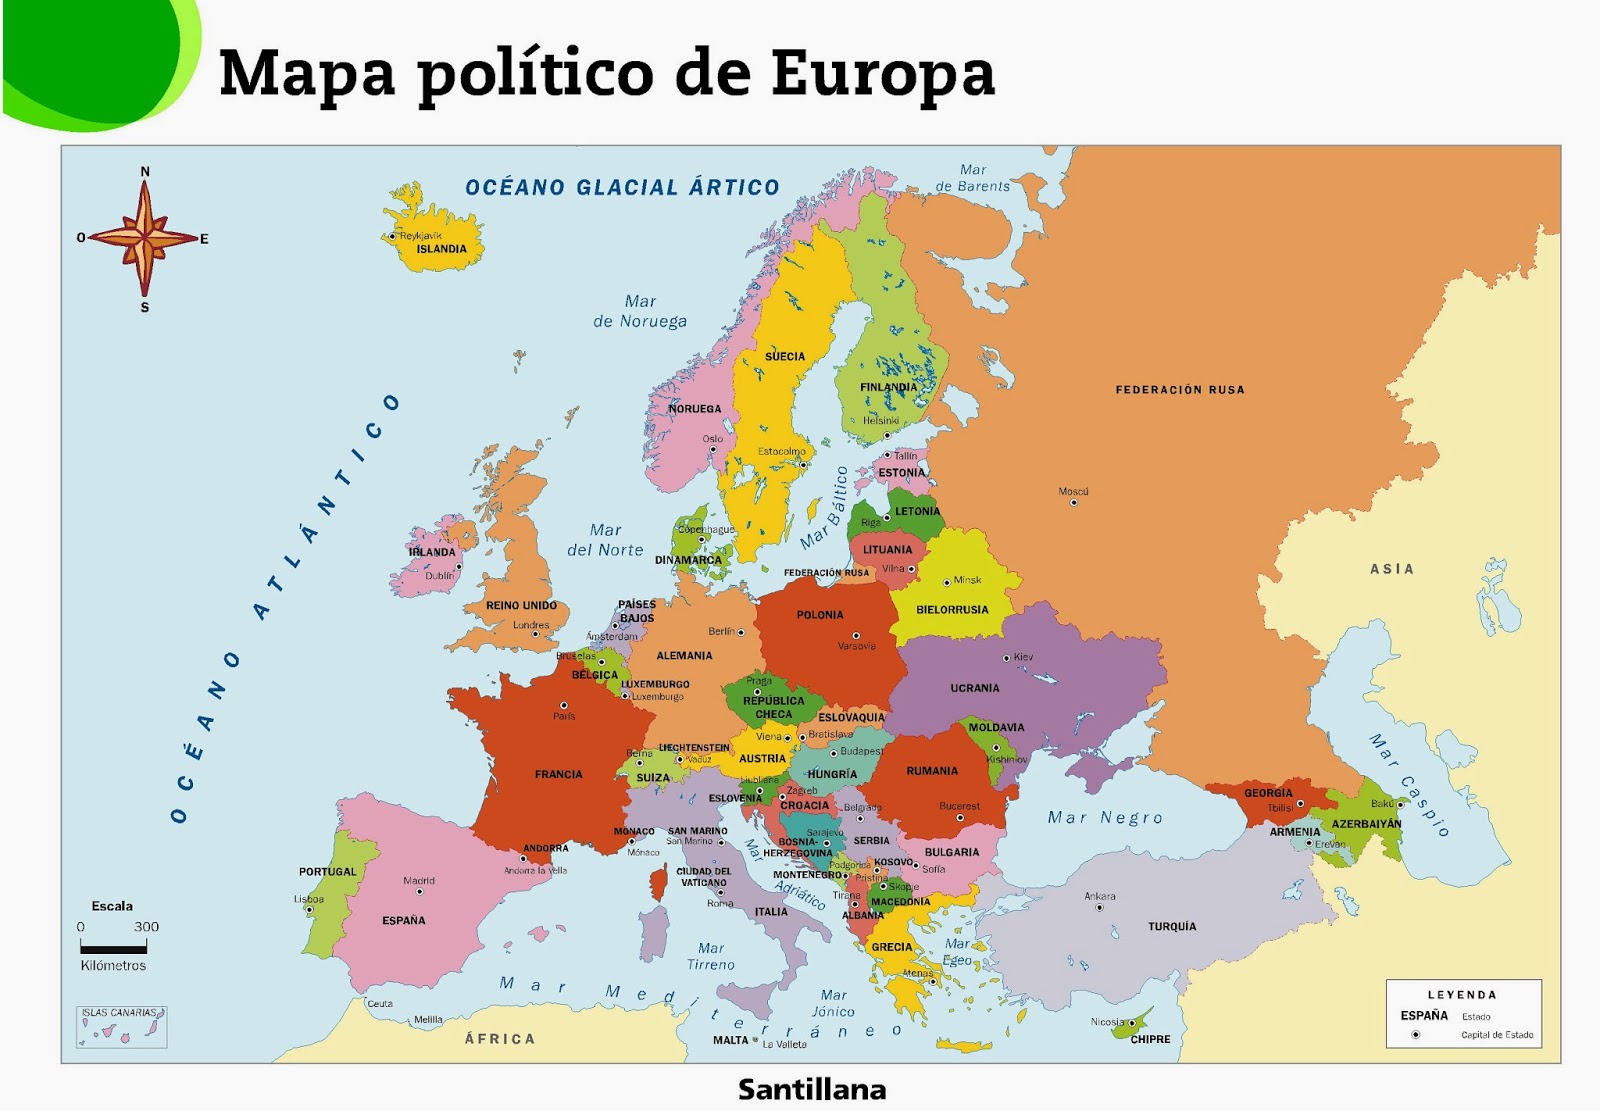 MAPA POLÍTICO DE EUROPA